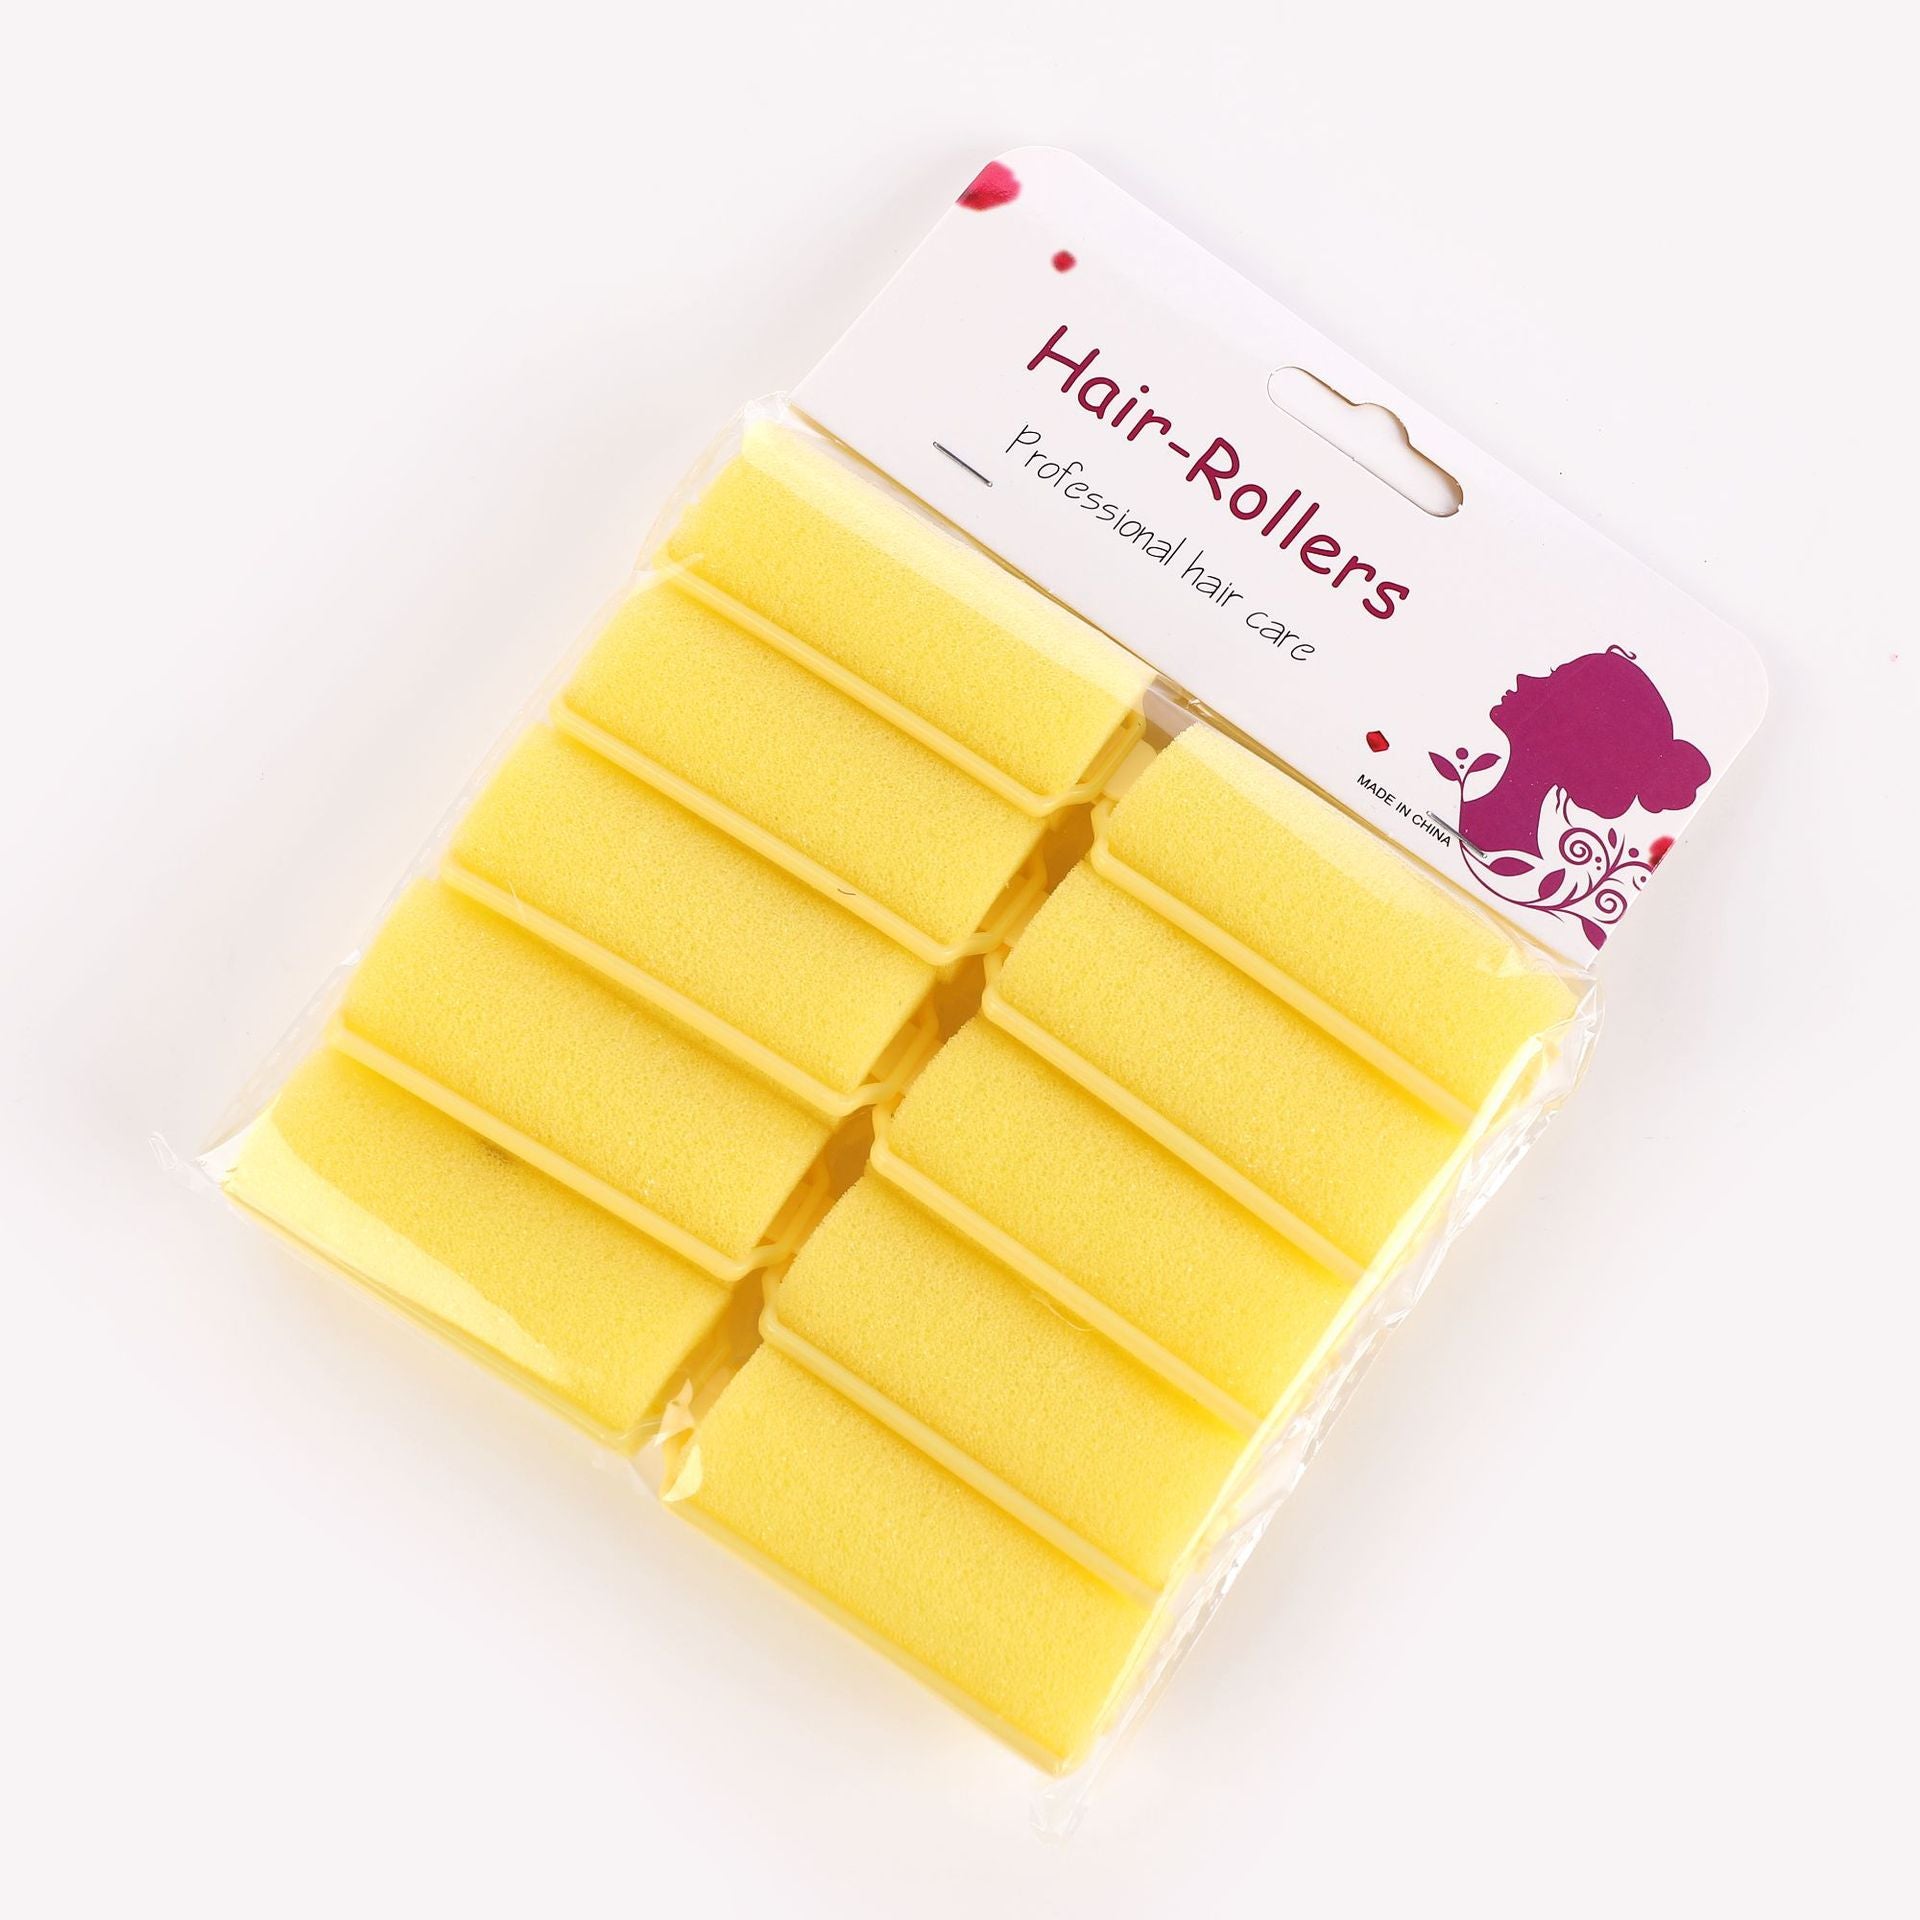 Sleeping Beauty Sponge roll fringe curler hair roller hair tools (Set Of 6 Pcs)